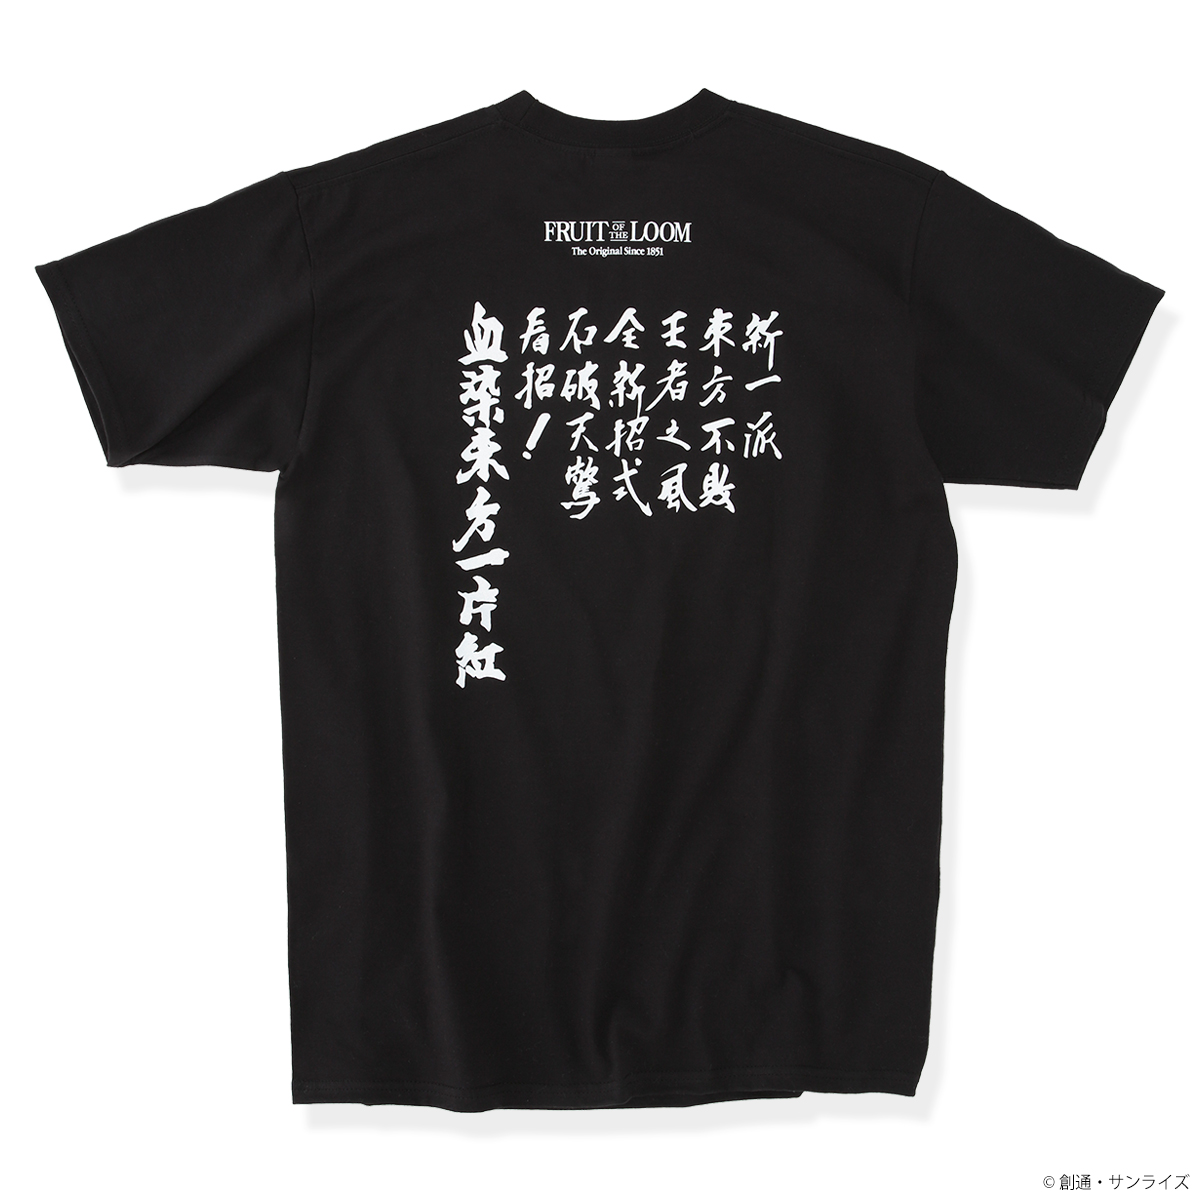 『機動武闘伝Gガンダム』30周年記念企画、「FRUIT OF THE LOOM」コラボTシャツ が登場!